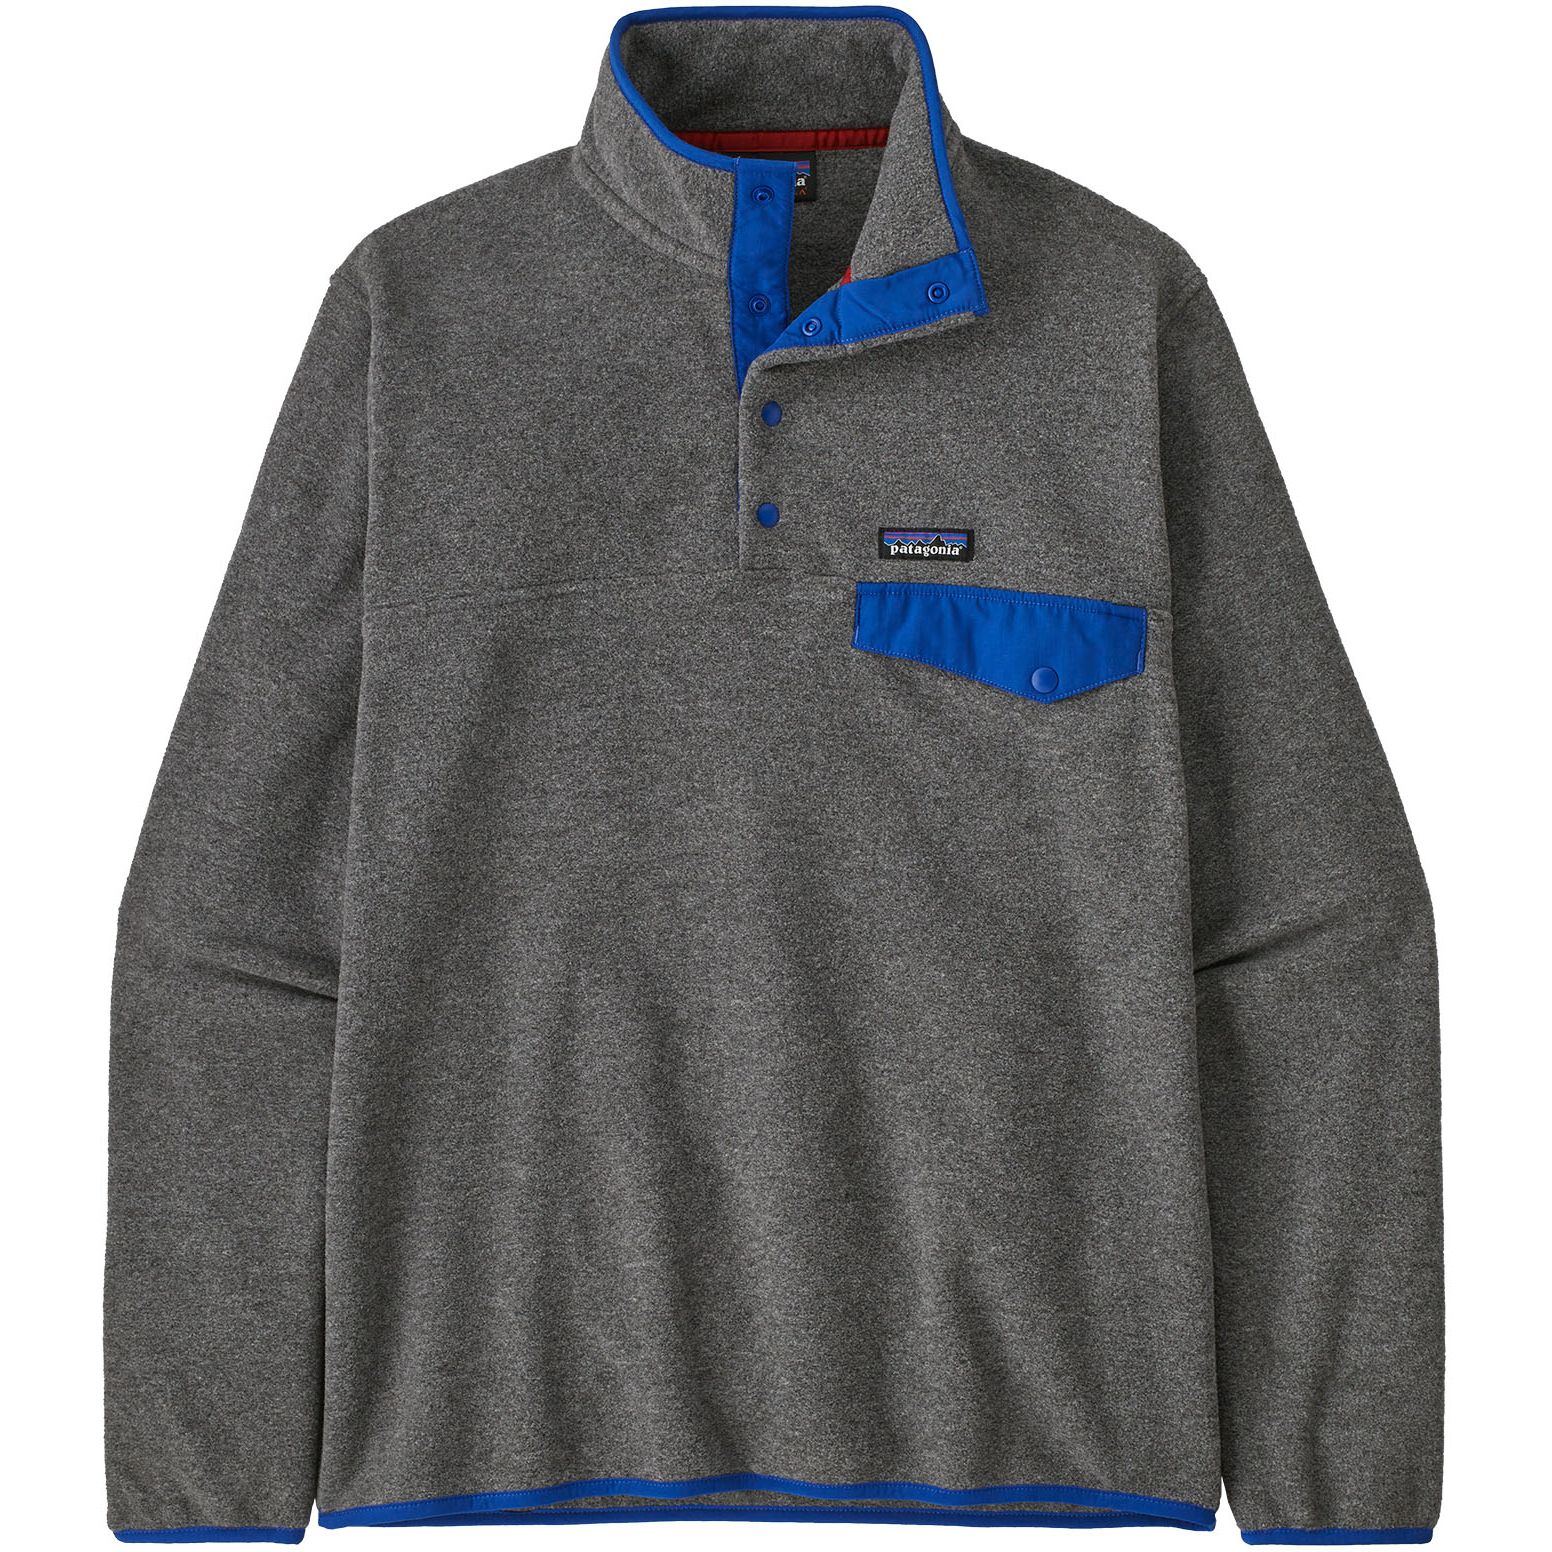 Produktbild von Patagonia Lightweight Synchilla Snap-T Fleece Pullover Herren - Nickel w/Passage Blue